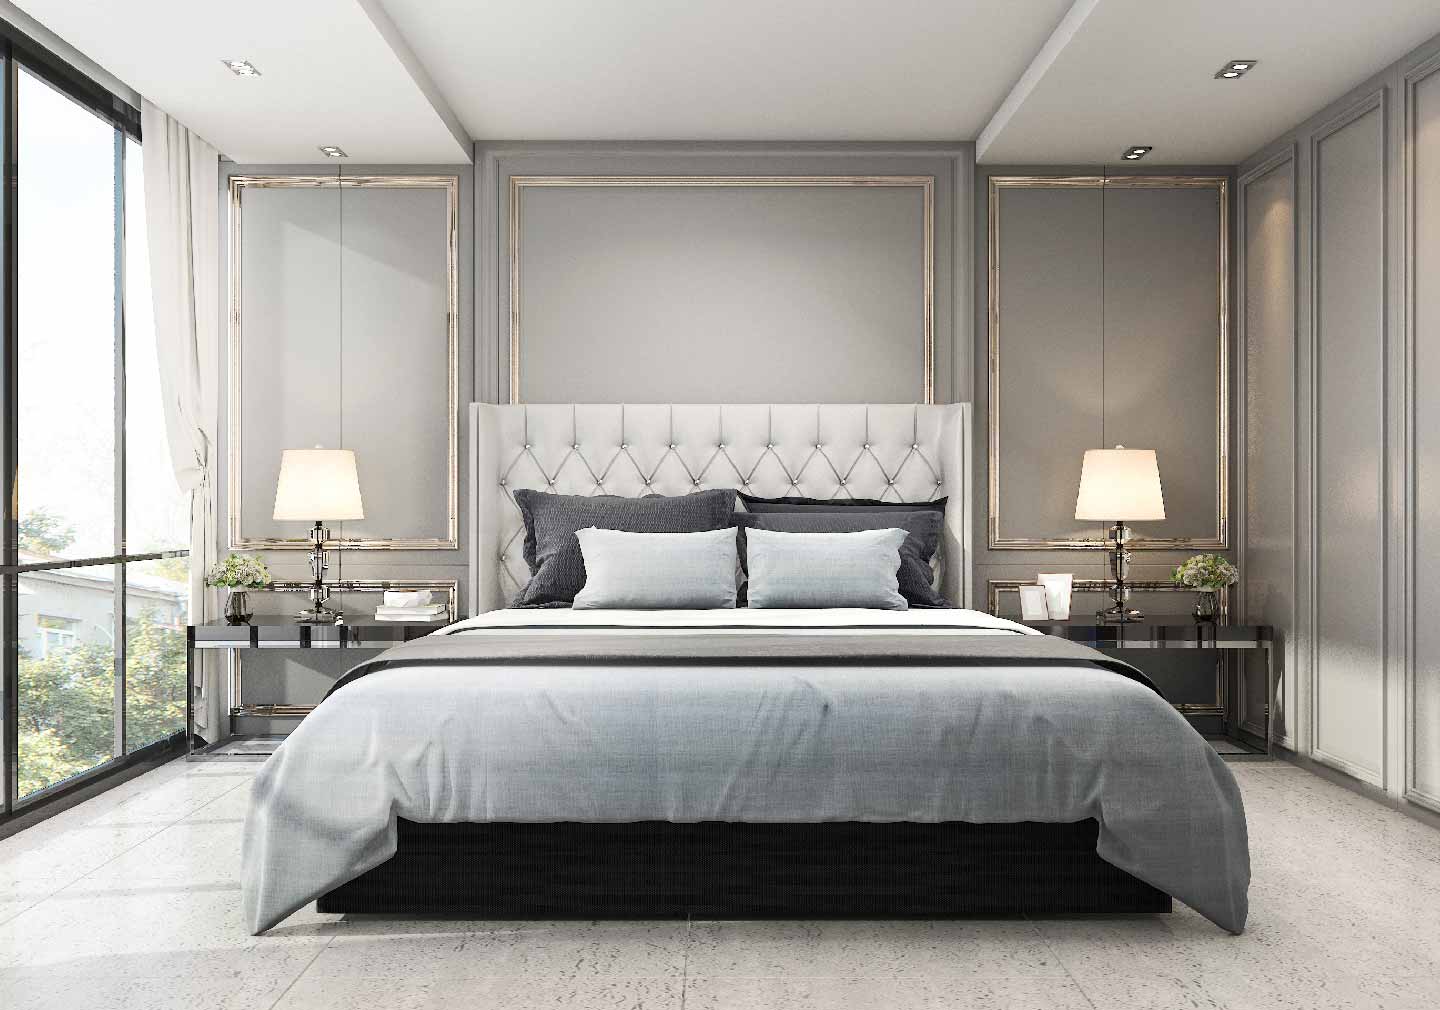 False ceiling interior design ideas for bedroom
